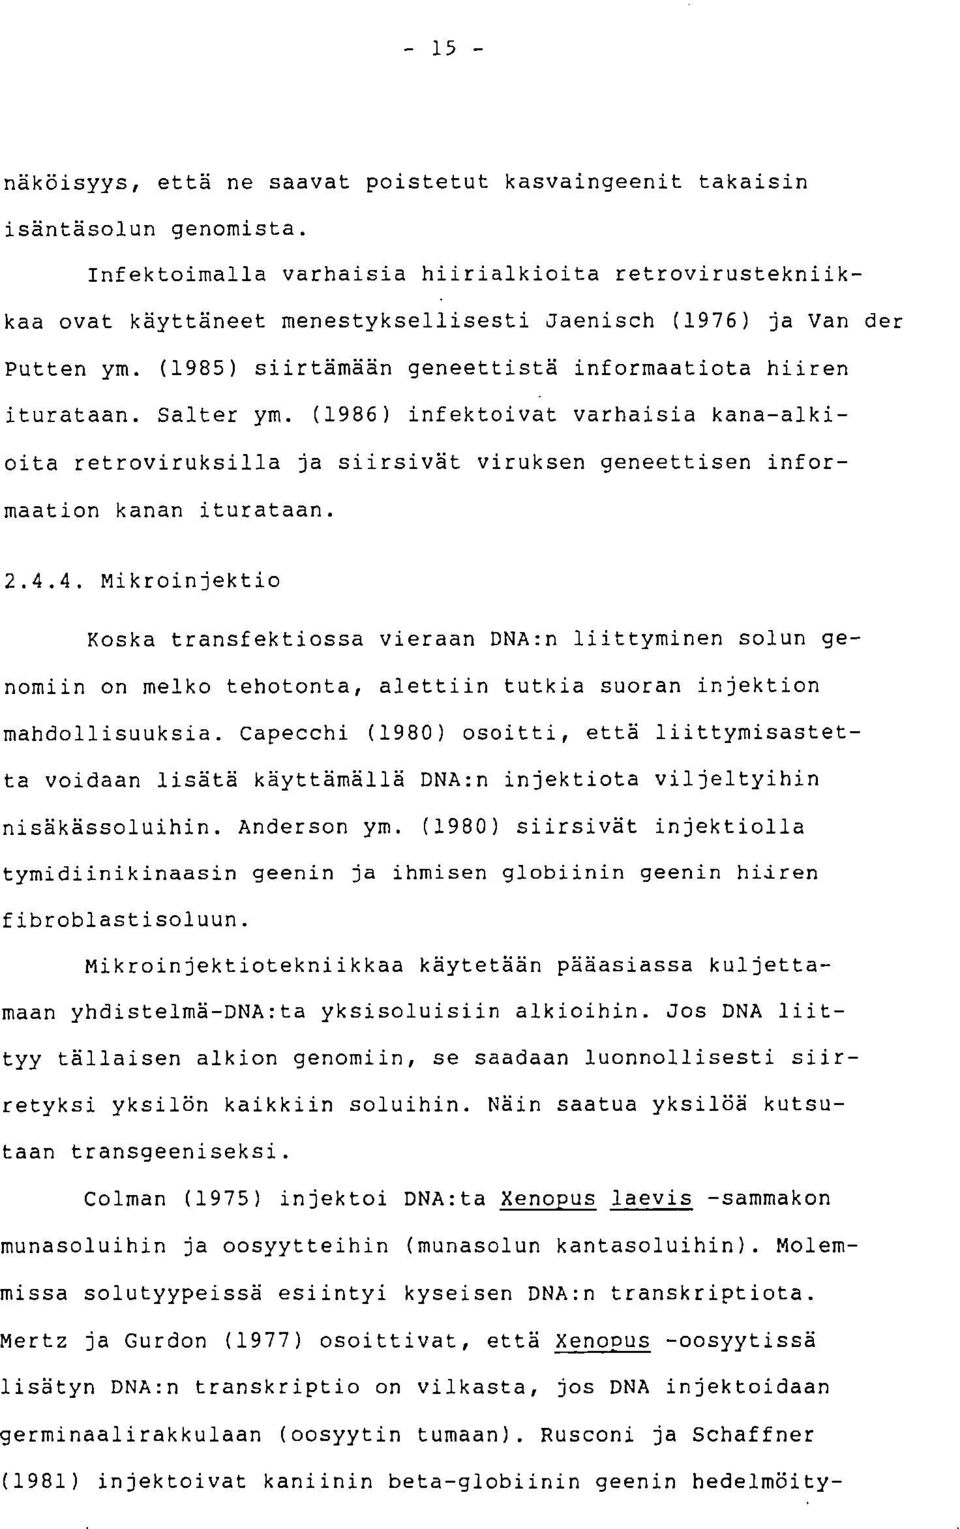 Salter ym. (1986) infektoivat varhaisia kana-alkioita retroviruksilla ja siirsivät viruksen geneettisen informaation kanan iturataan. 2.4.